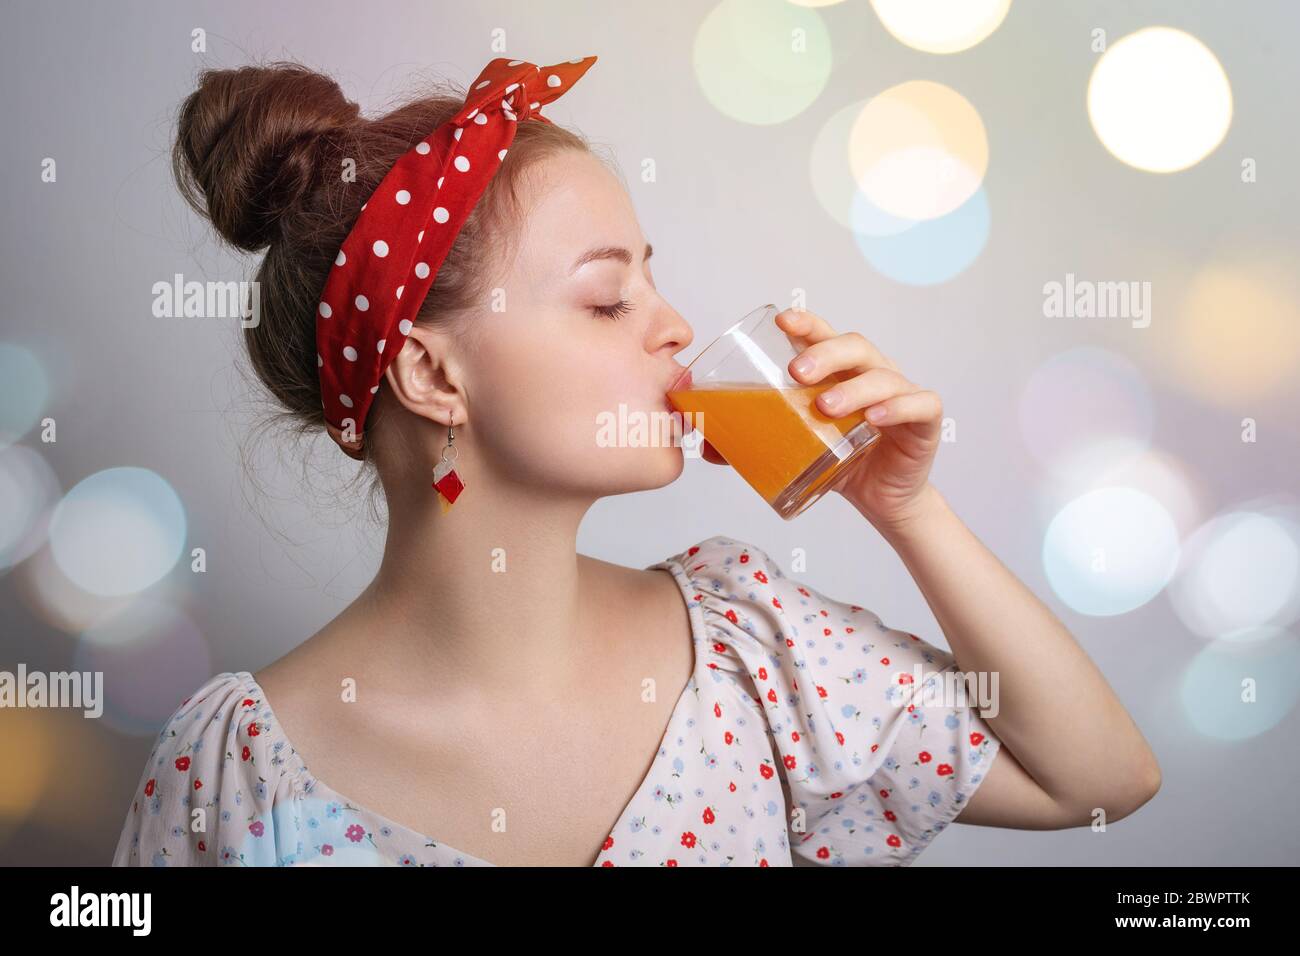 Junge kaukasische Frau Mädchen trinken ein Glas Orange oder Mango Fruchtsaft oder Cocktail. Frisches Sommerparty-Konzept Stockfoto